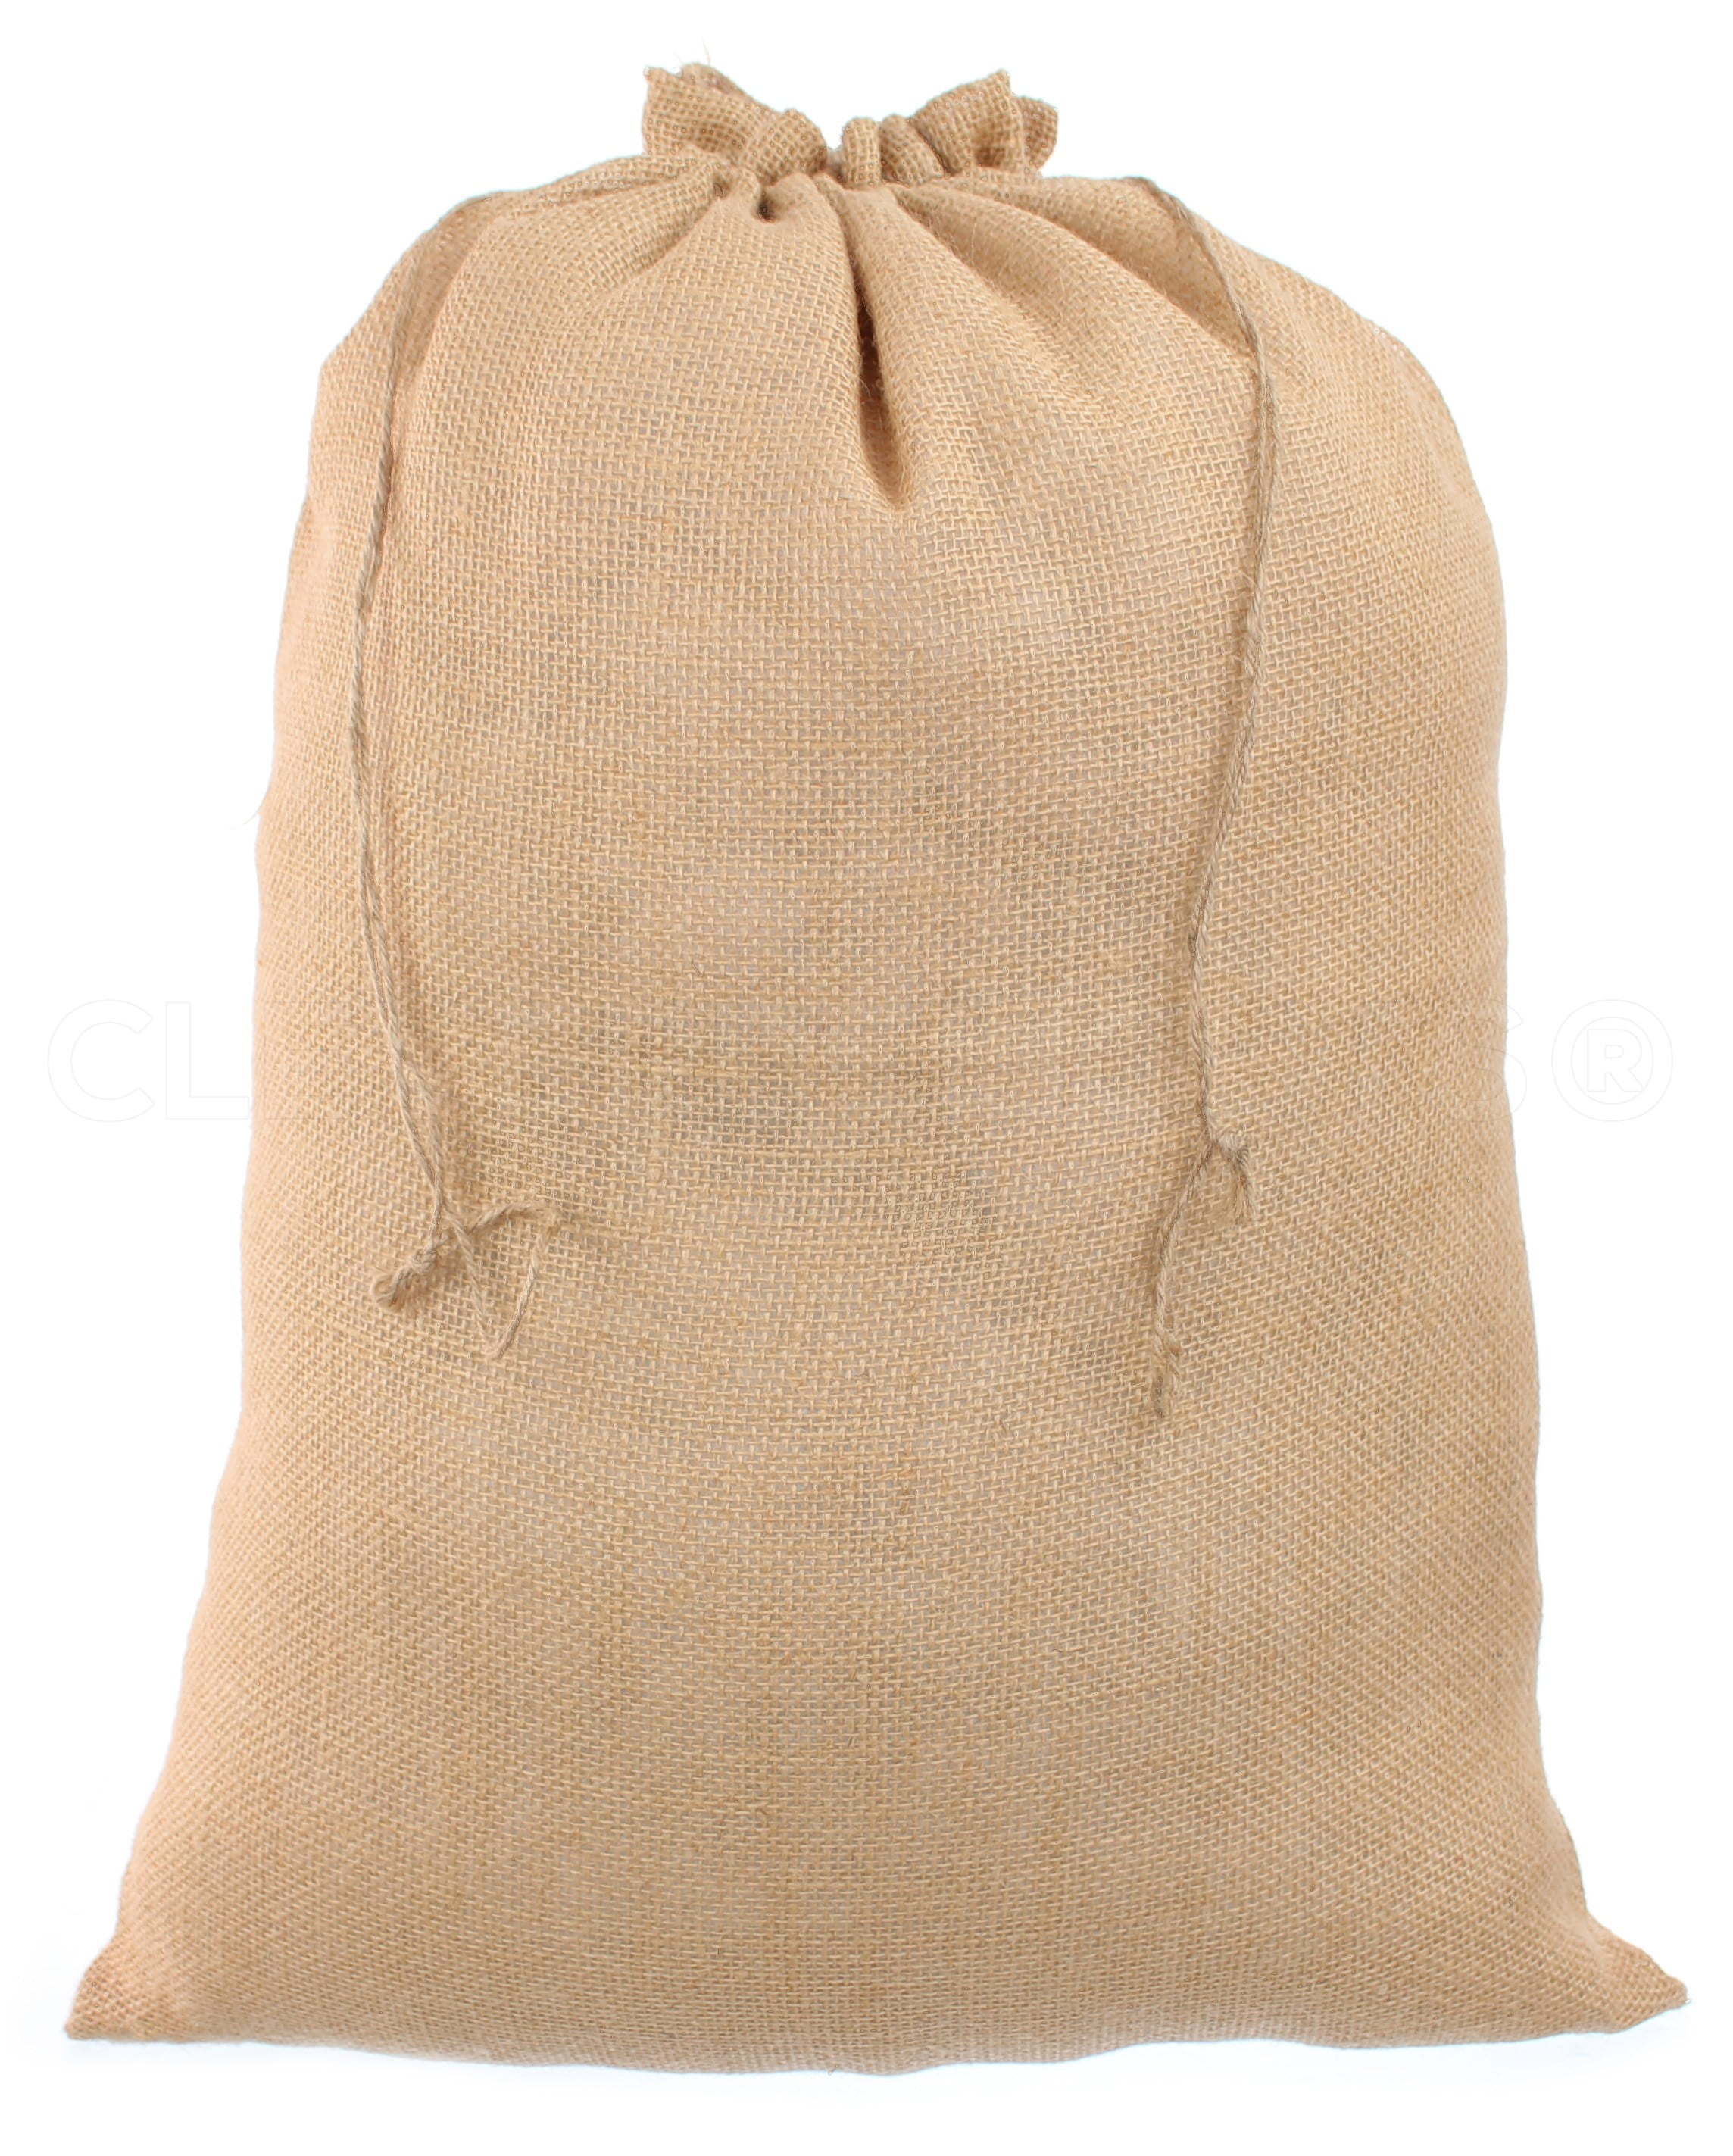 Lot of 8 Burlap Potato Sack  17" x 26" with Natural Fabric Bags 